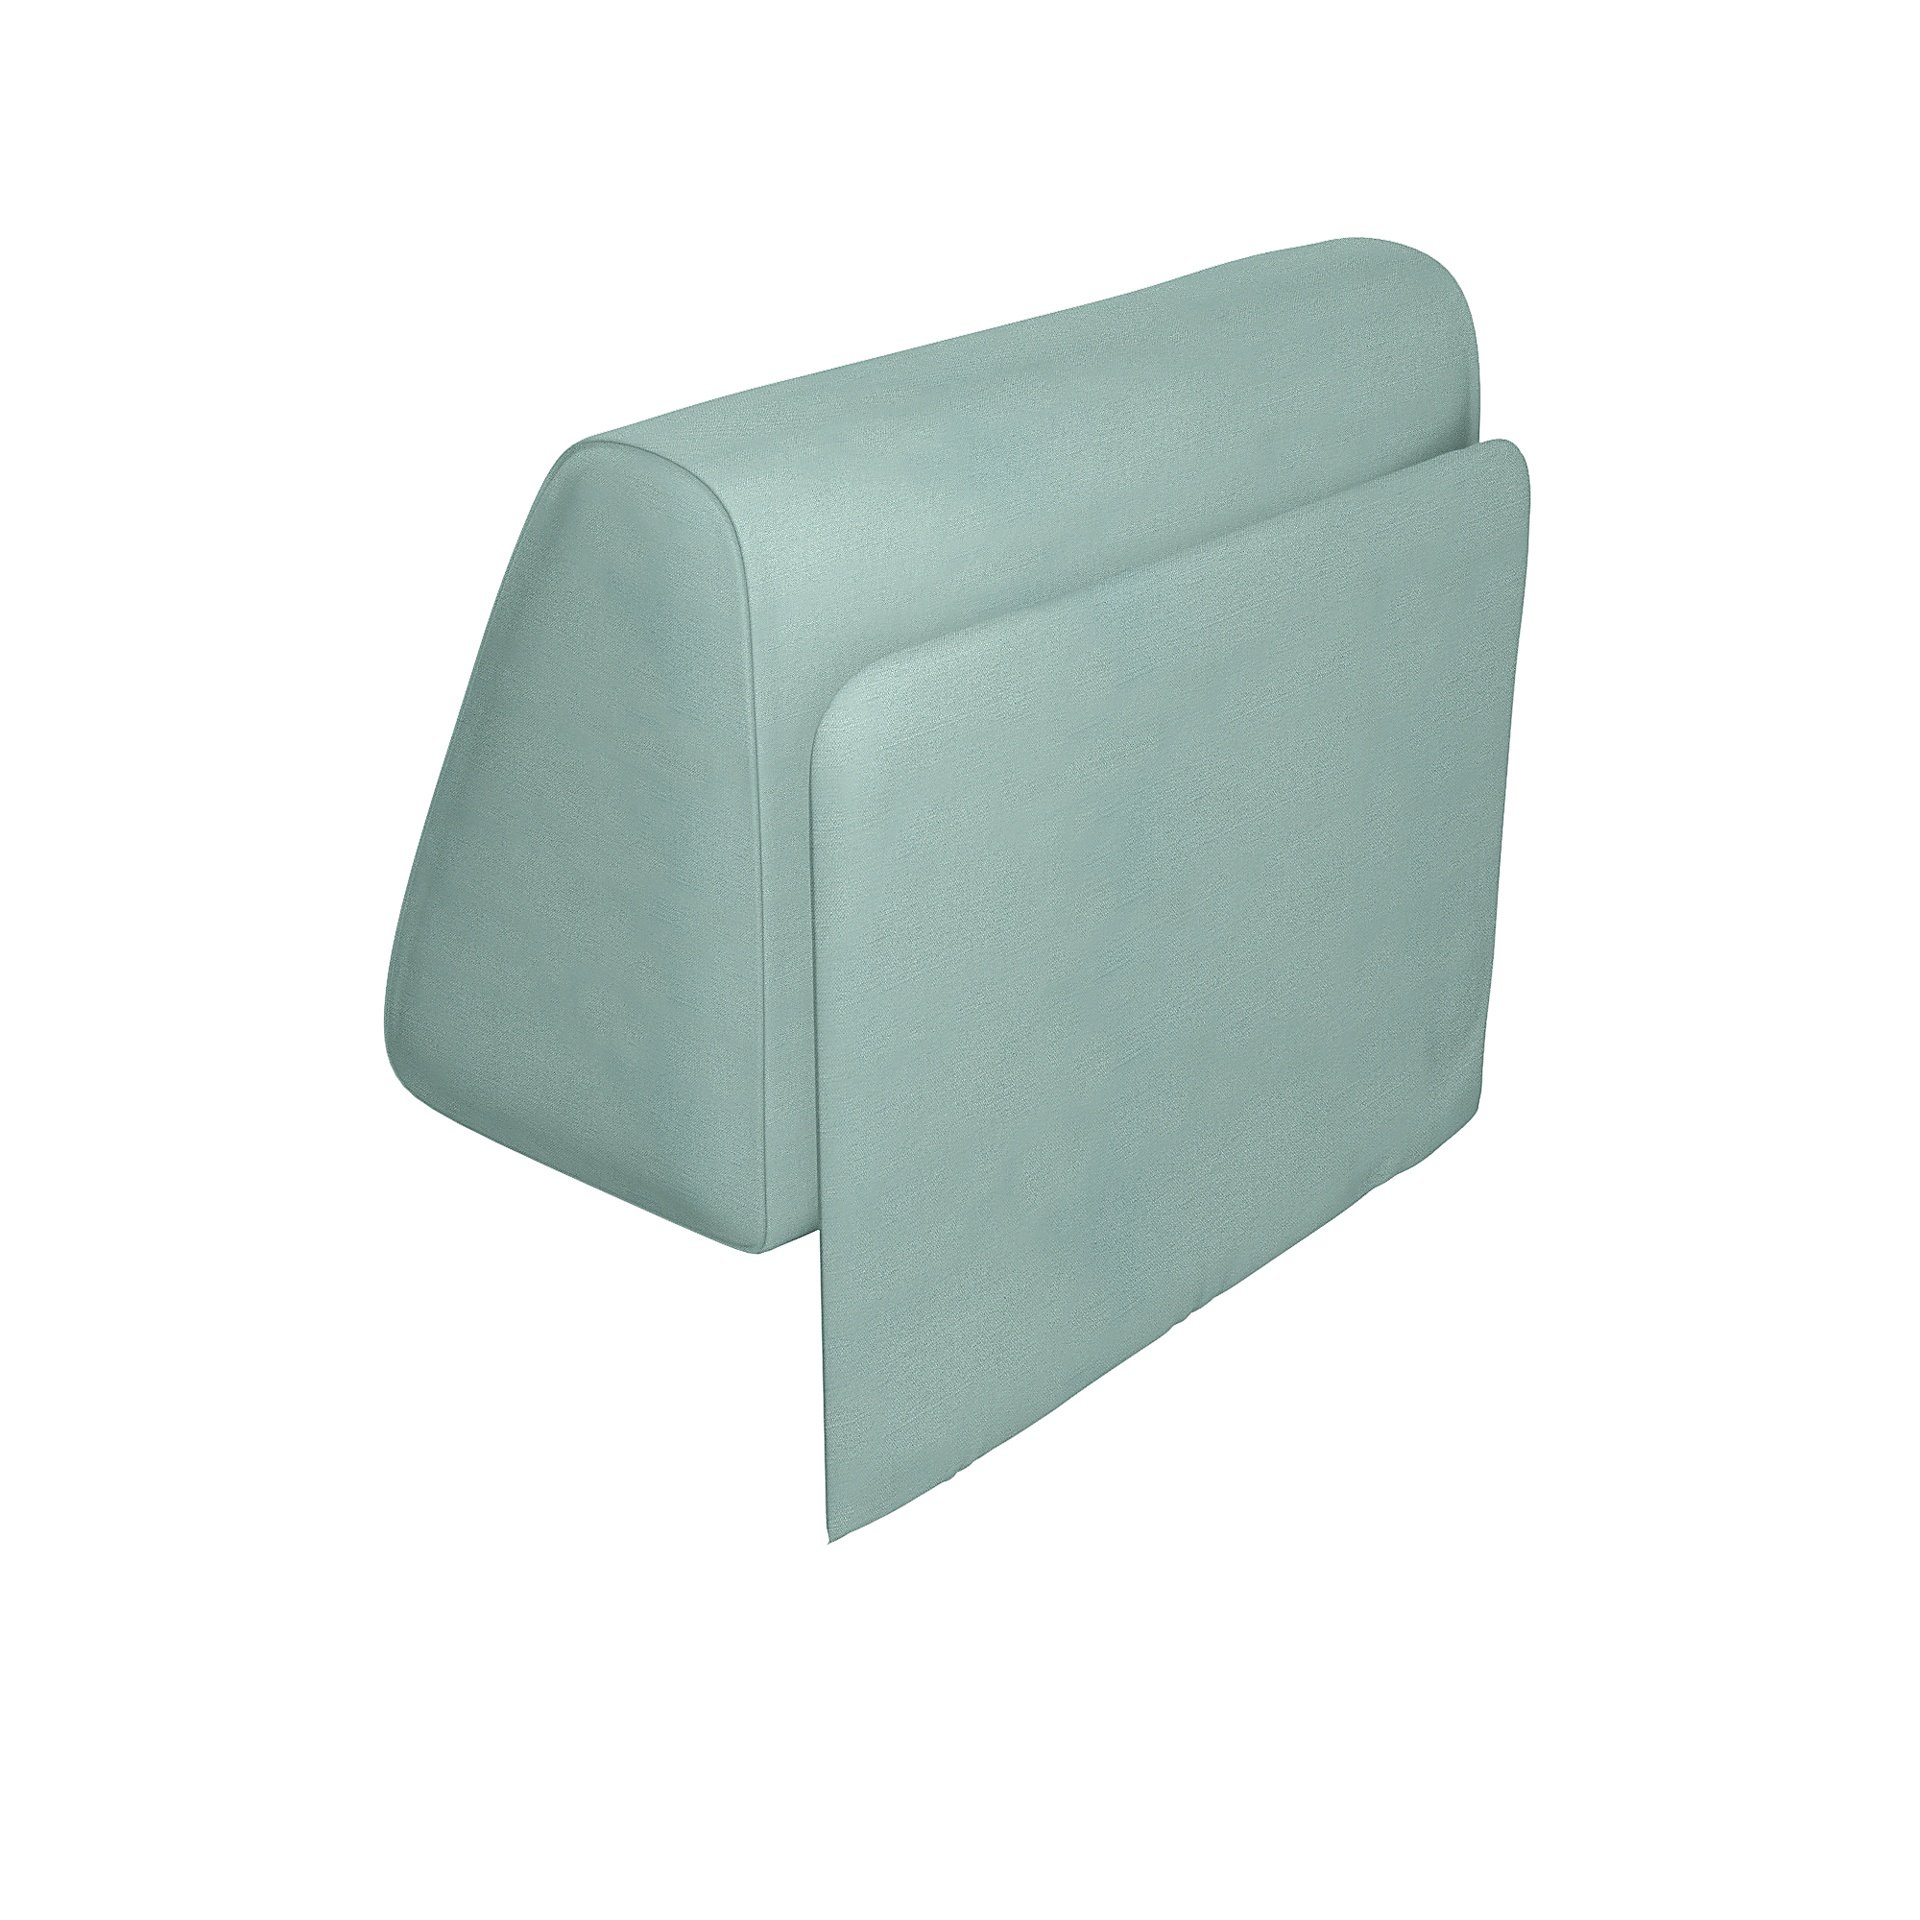 IKEA - Delaktig Backrest with Cushion Cover, Mineral Blue, Linen - Bemz